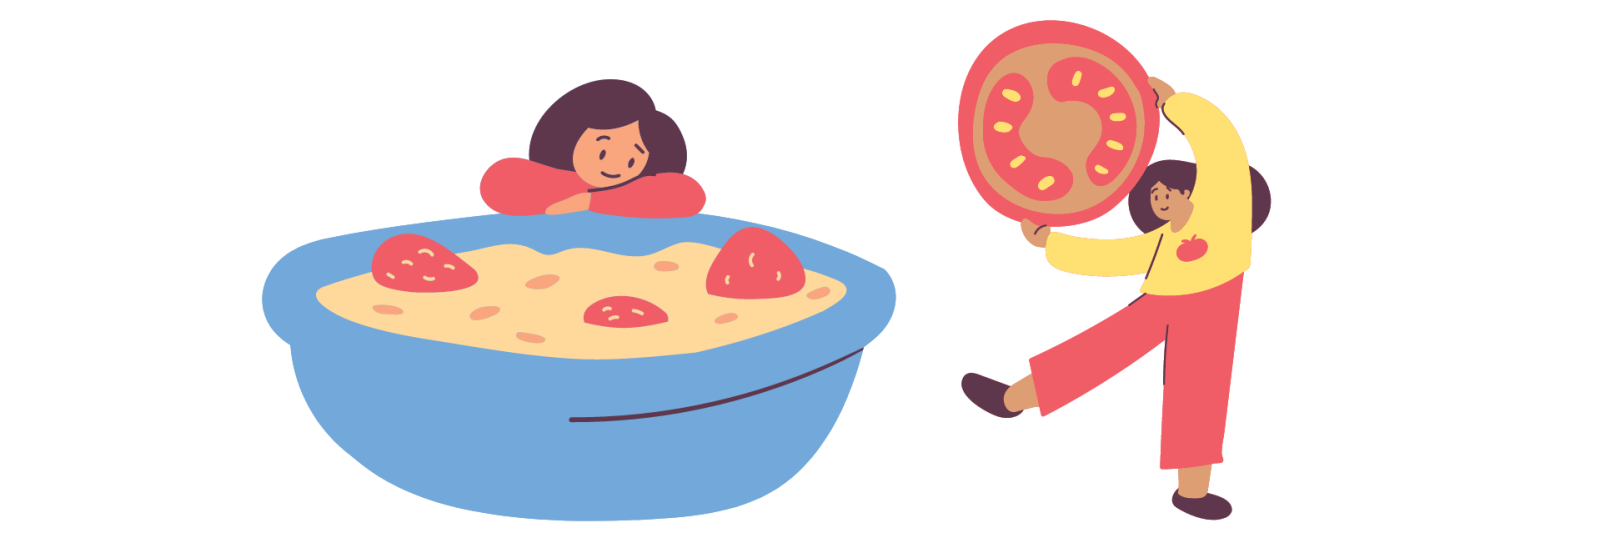 Bambina con un pomodoro gigante e bambina con ciotola gigante